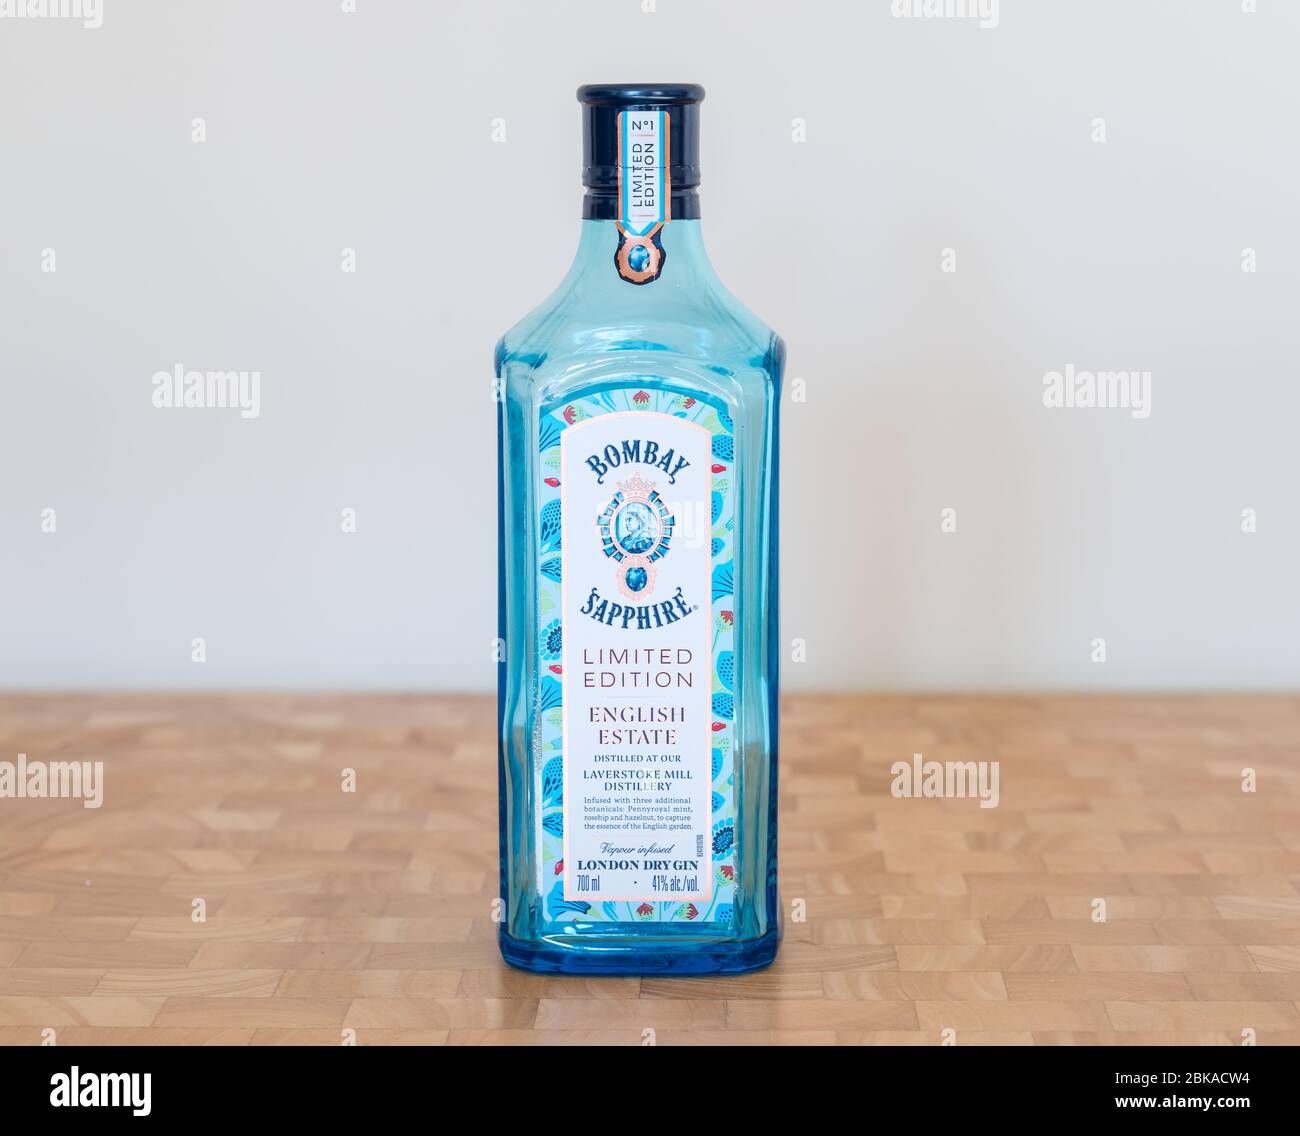 Bombay Sapphire Limited Edition blaue Gin-Flasche von Laverstoke Mill Distillery, England, Großbritannien Stockfoto